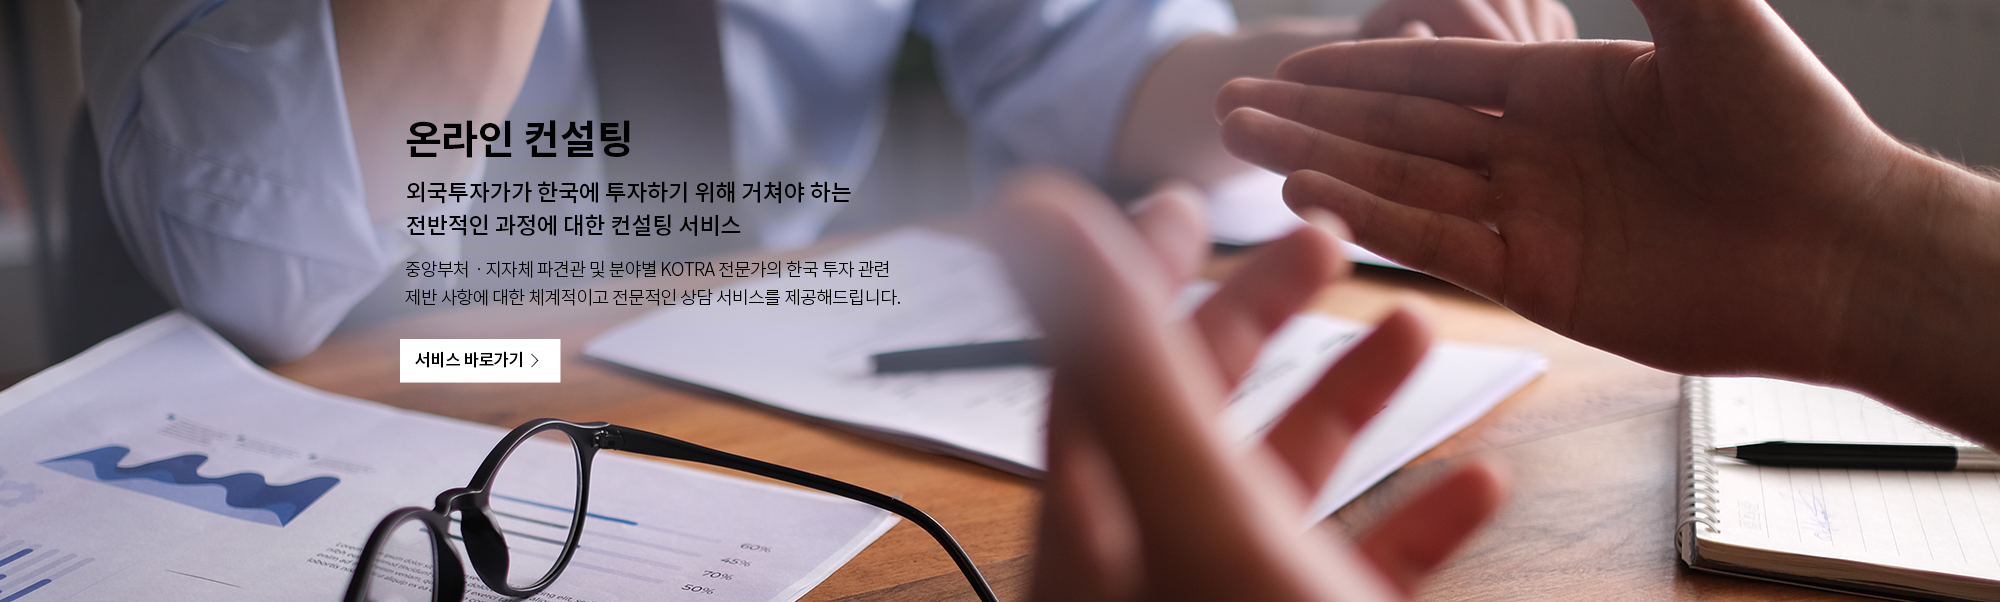 온라인 컨설팅
외국투자가가 한국에 투자하기 위해 거쳐야 하는 
전반적인 과장에 대한 컨설팅 서비스
중앙부처 · 지자체 파견관 및 분야별 KOTRA 전문가의 한국 투자 관련
제반 사항에 대한 체계적이고 전문적인 상담 서비스를 제공해드립니다.